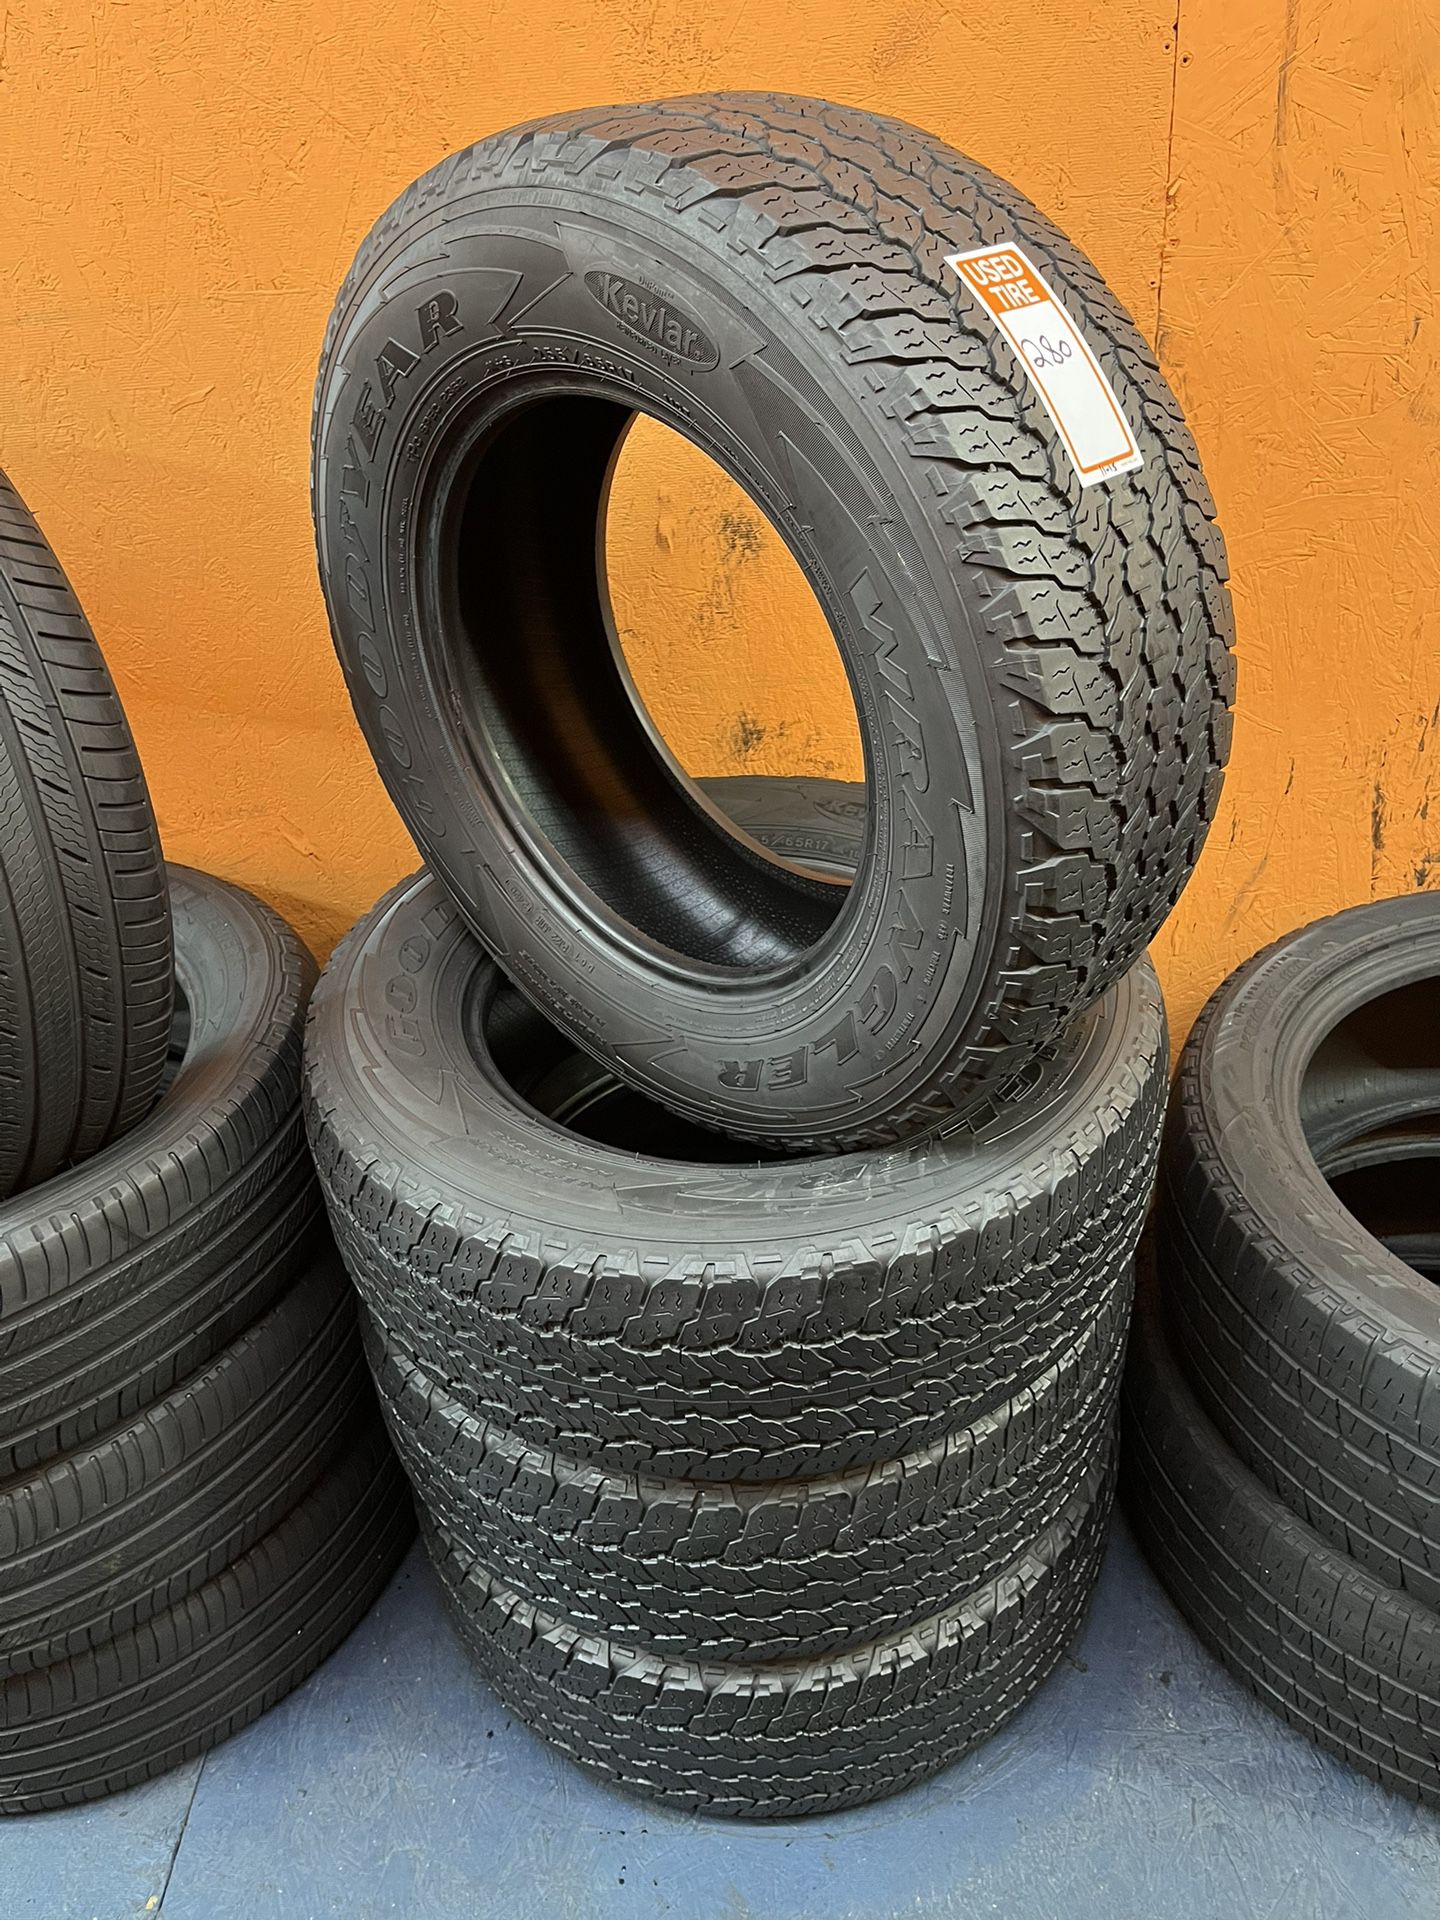 255/65R17 Goodyear Wrangler Kevlar Full Tire Set for Sale in Arlington, TX  - OfferUp